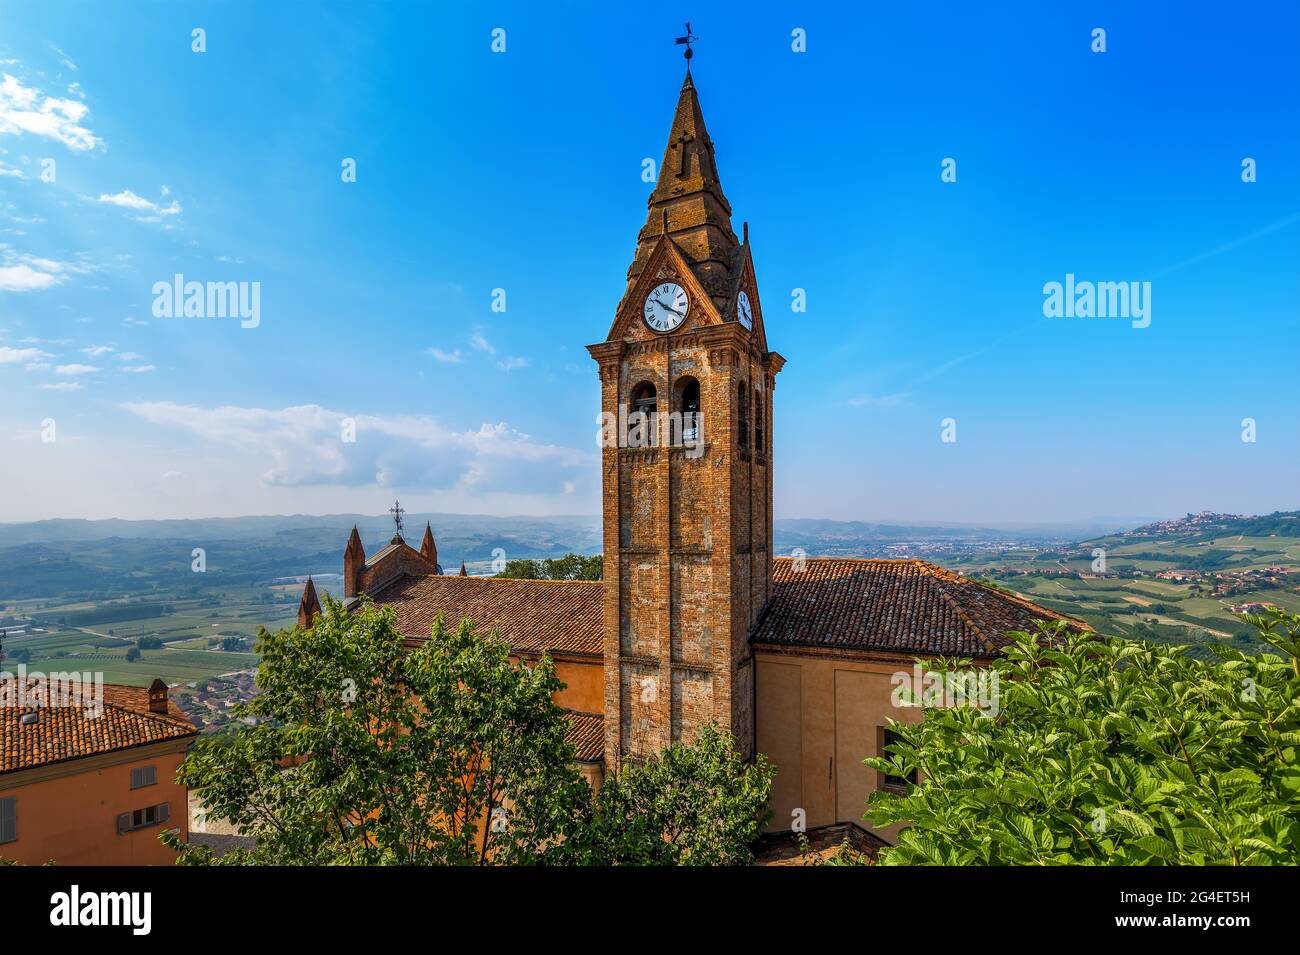 Vue d'en haut sur le toit de l'église et le vieux beffroi de briques avec horloge sous le ciel bleu dans la petite ville de Magliano Alfieri dans le Piémont, dans le nord de l'Italie. Banque D'Images